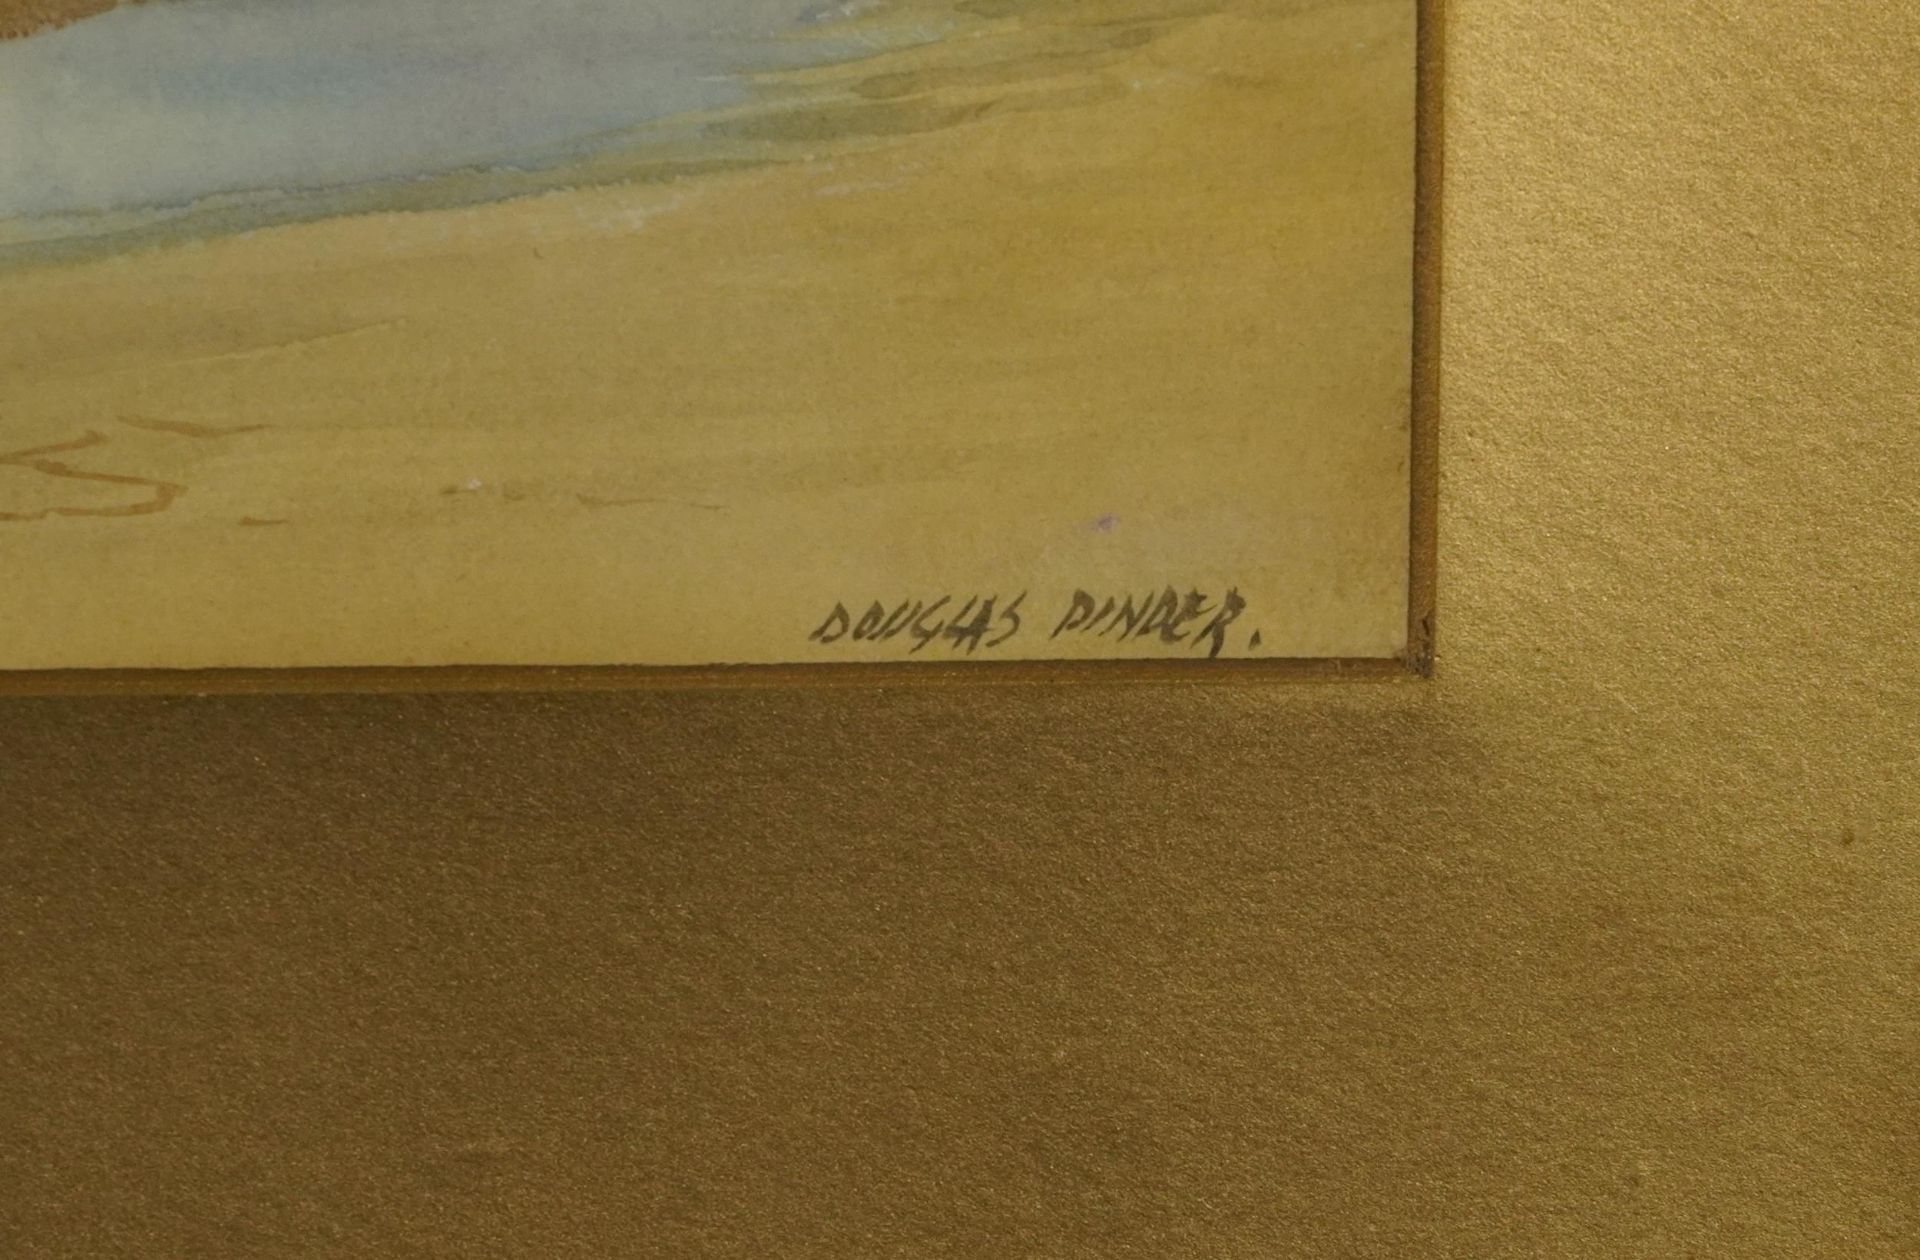 Douglas Pinder - Towan Beach, Newquay, Cornish watercolour, F E Williams & Co label verso, - Image 4 of 6